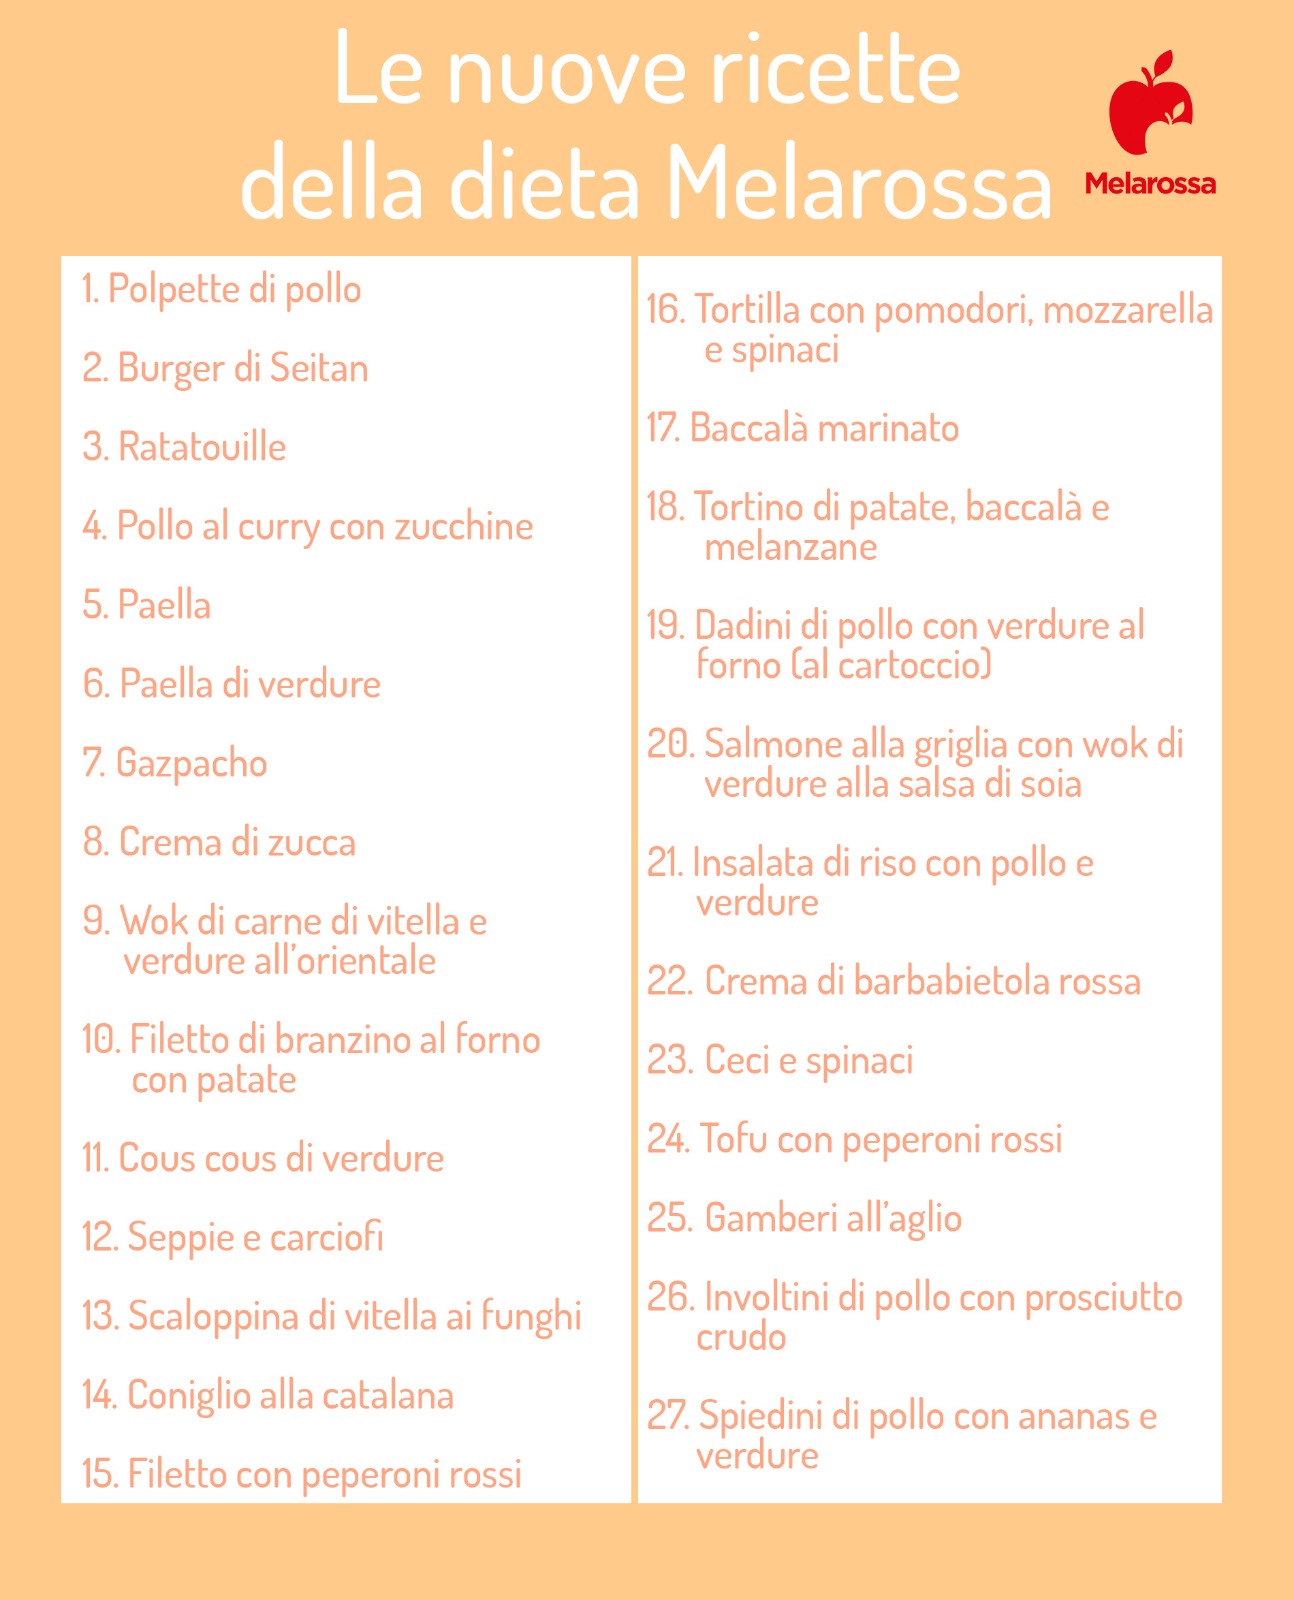 Le nuove ricette della dieta Melarossa